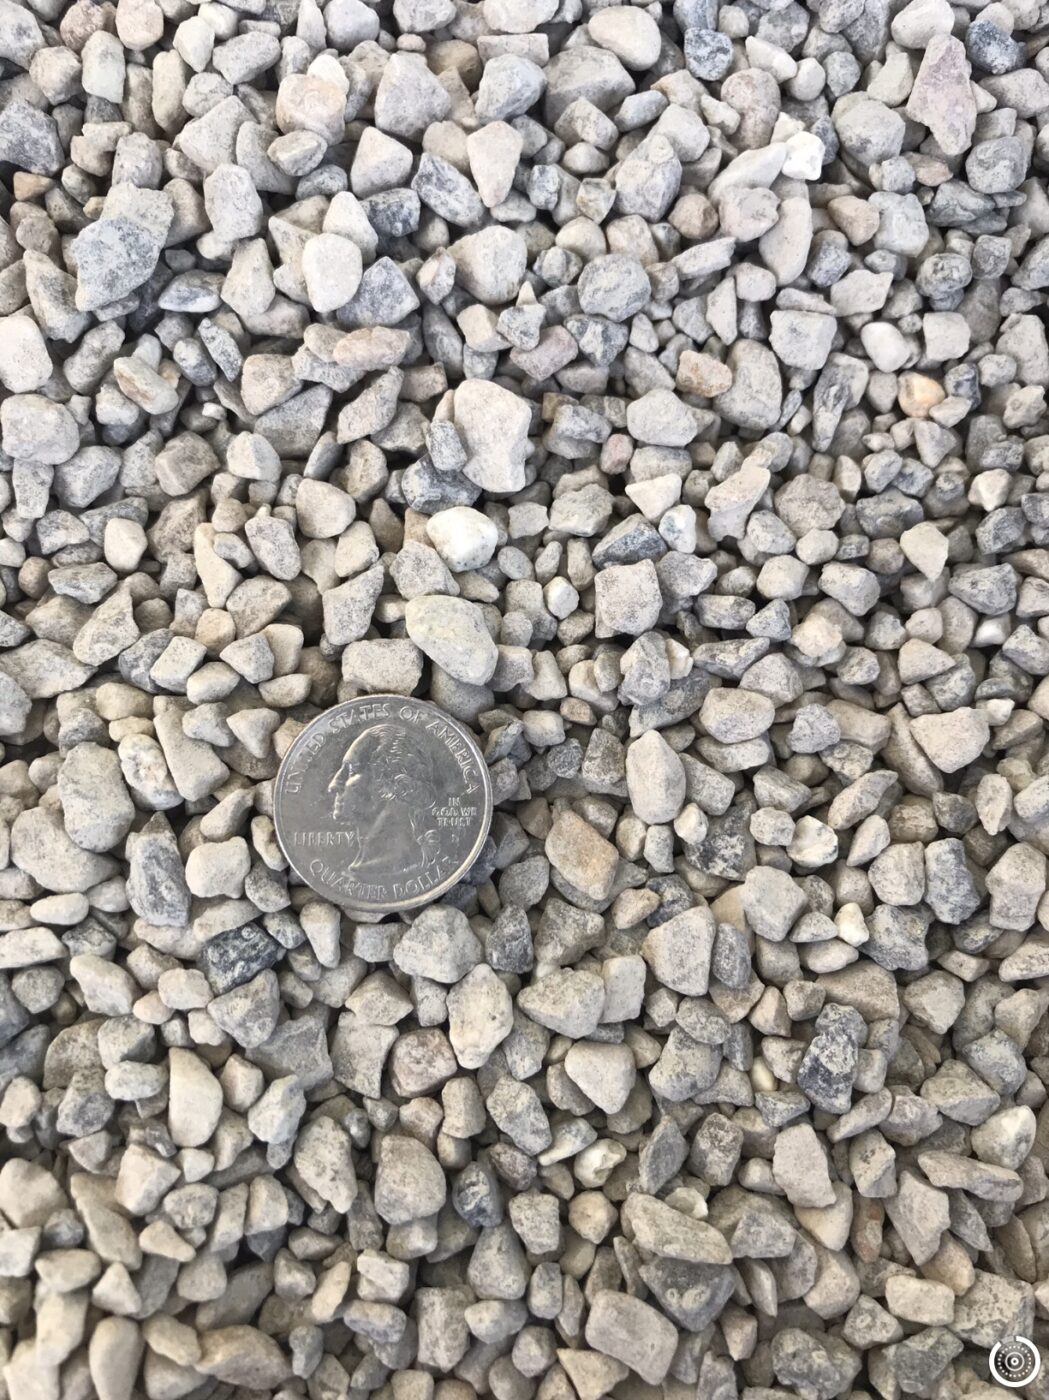 gray gravel